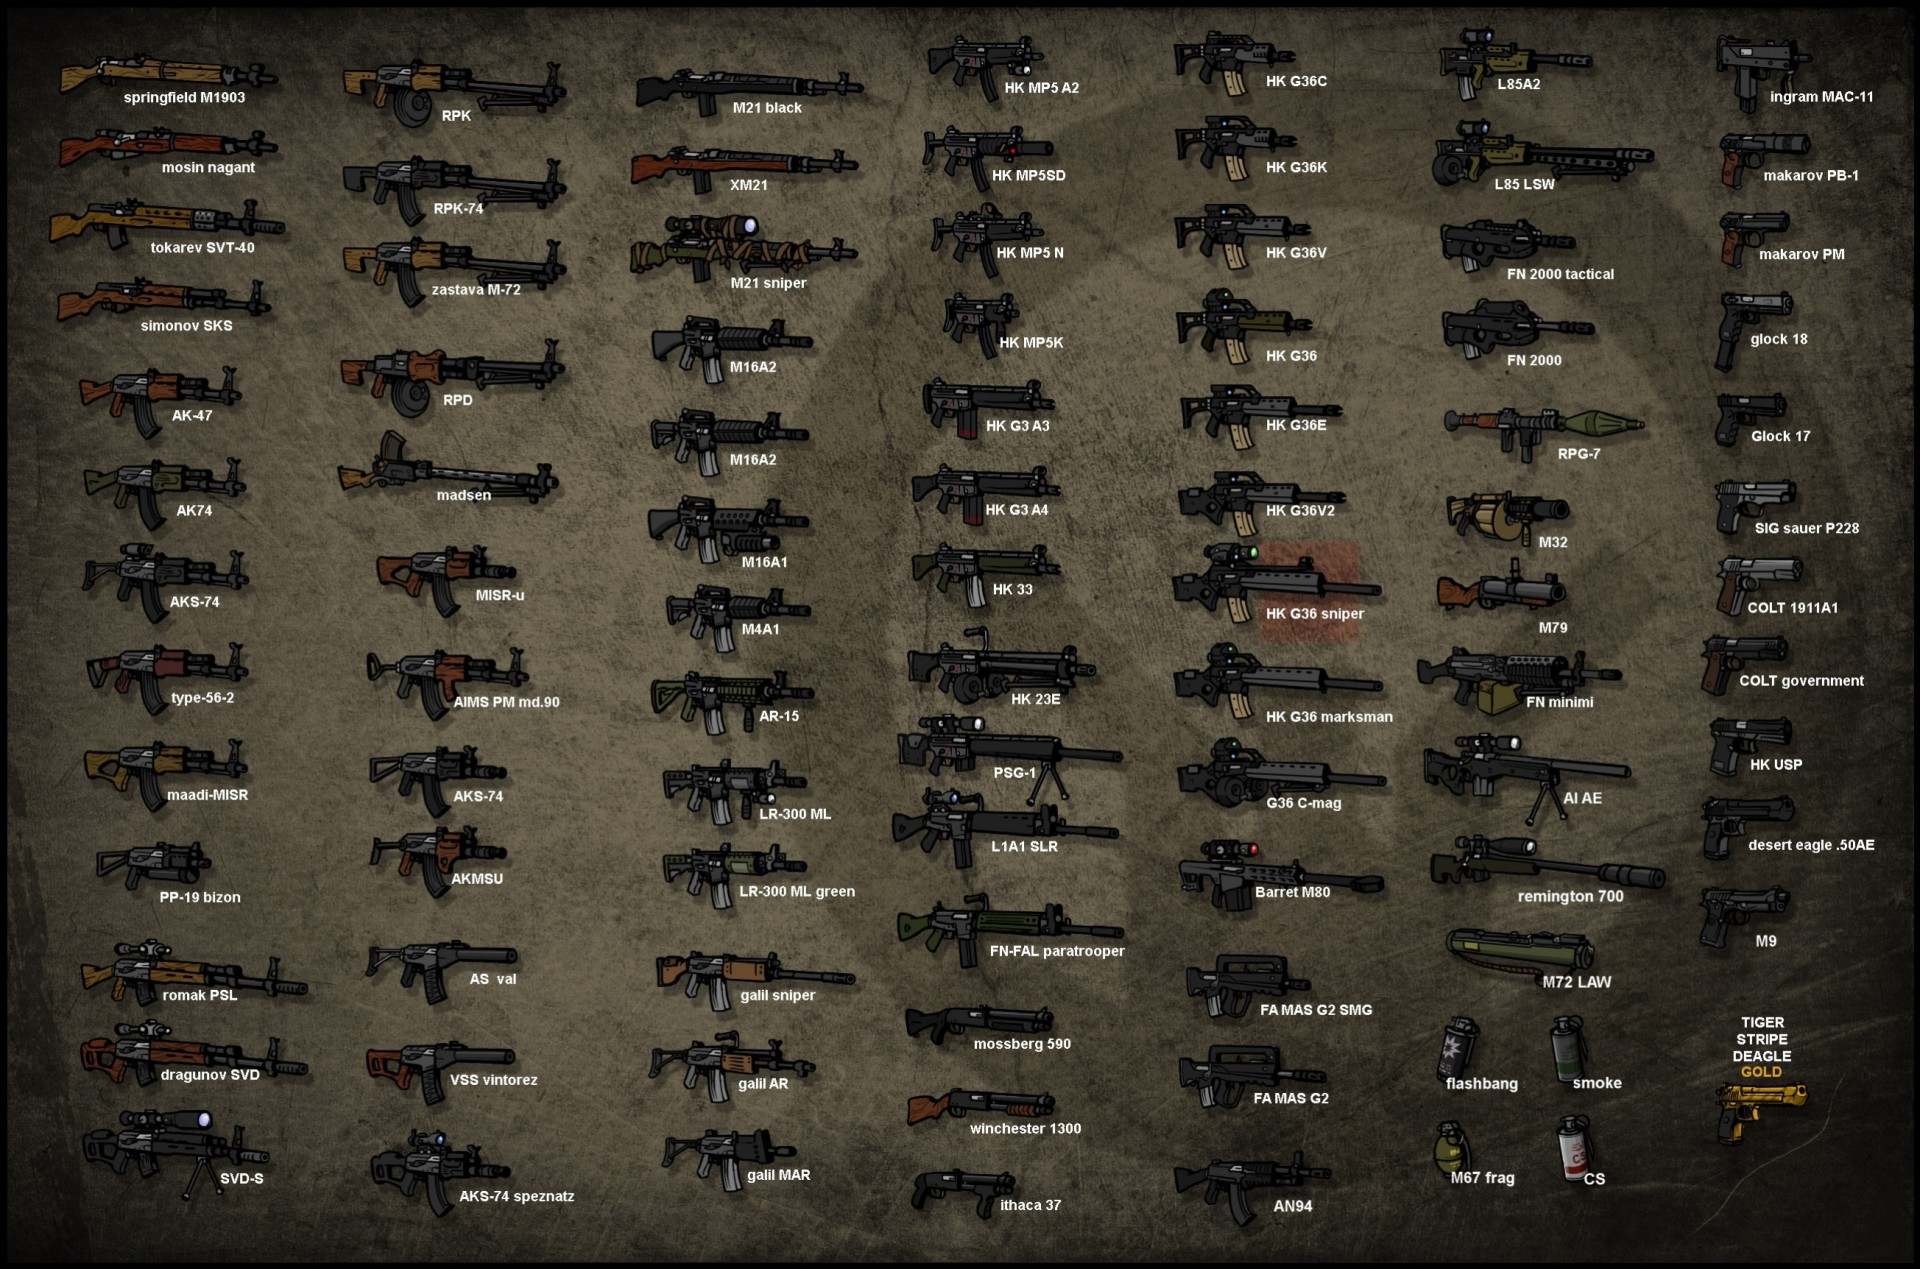 Огнестрельное оружие виды и названия с фото